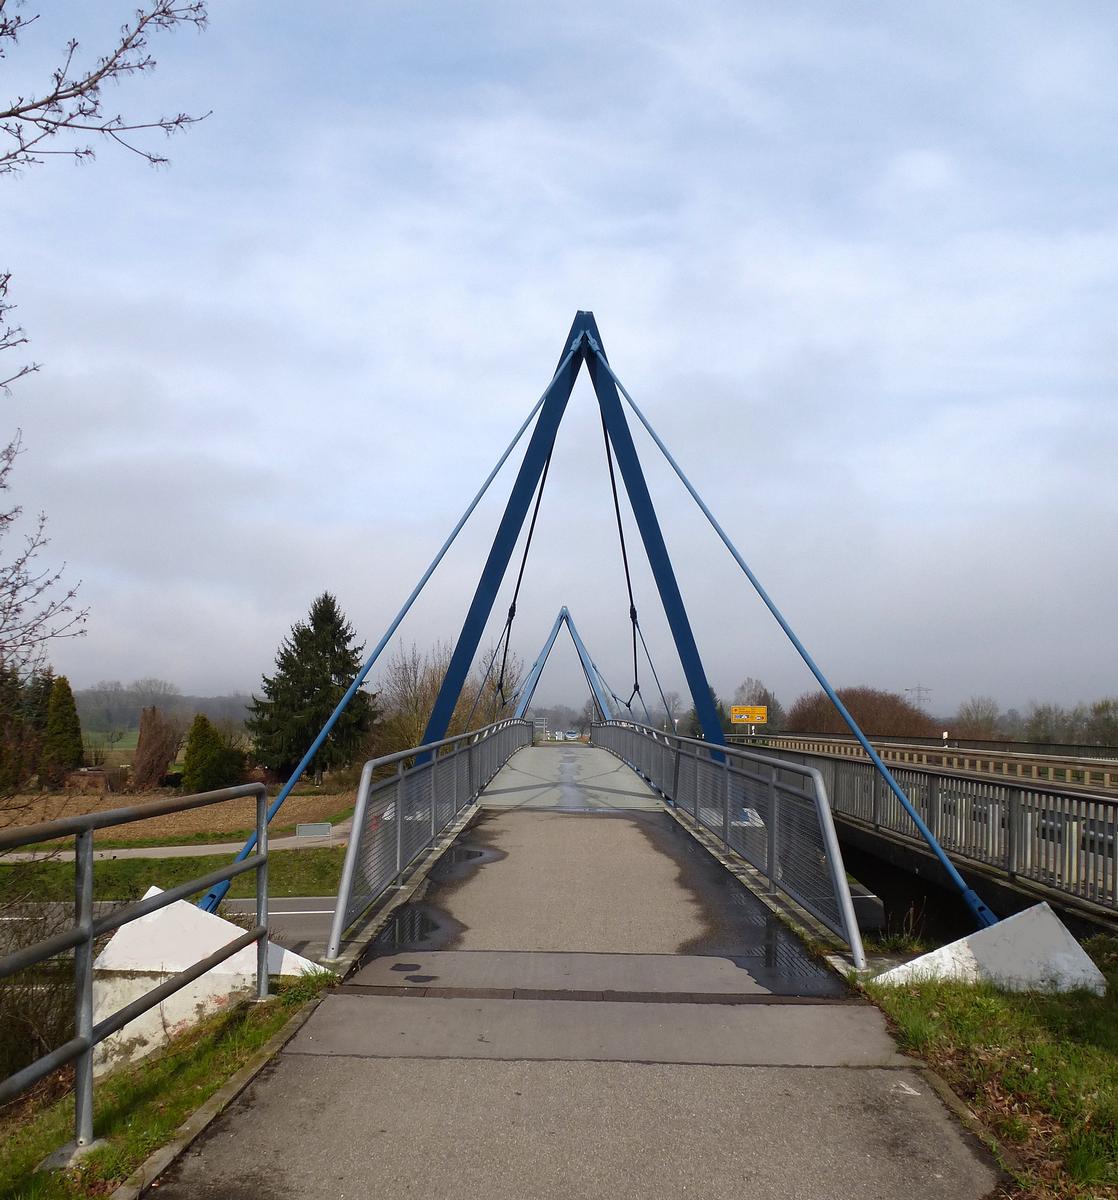 Gundelfingen Footbridge 